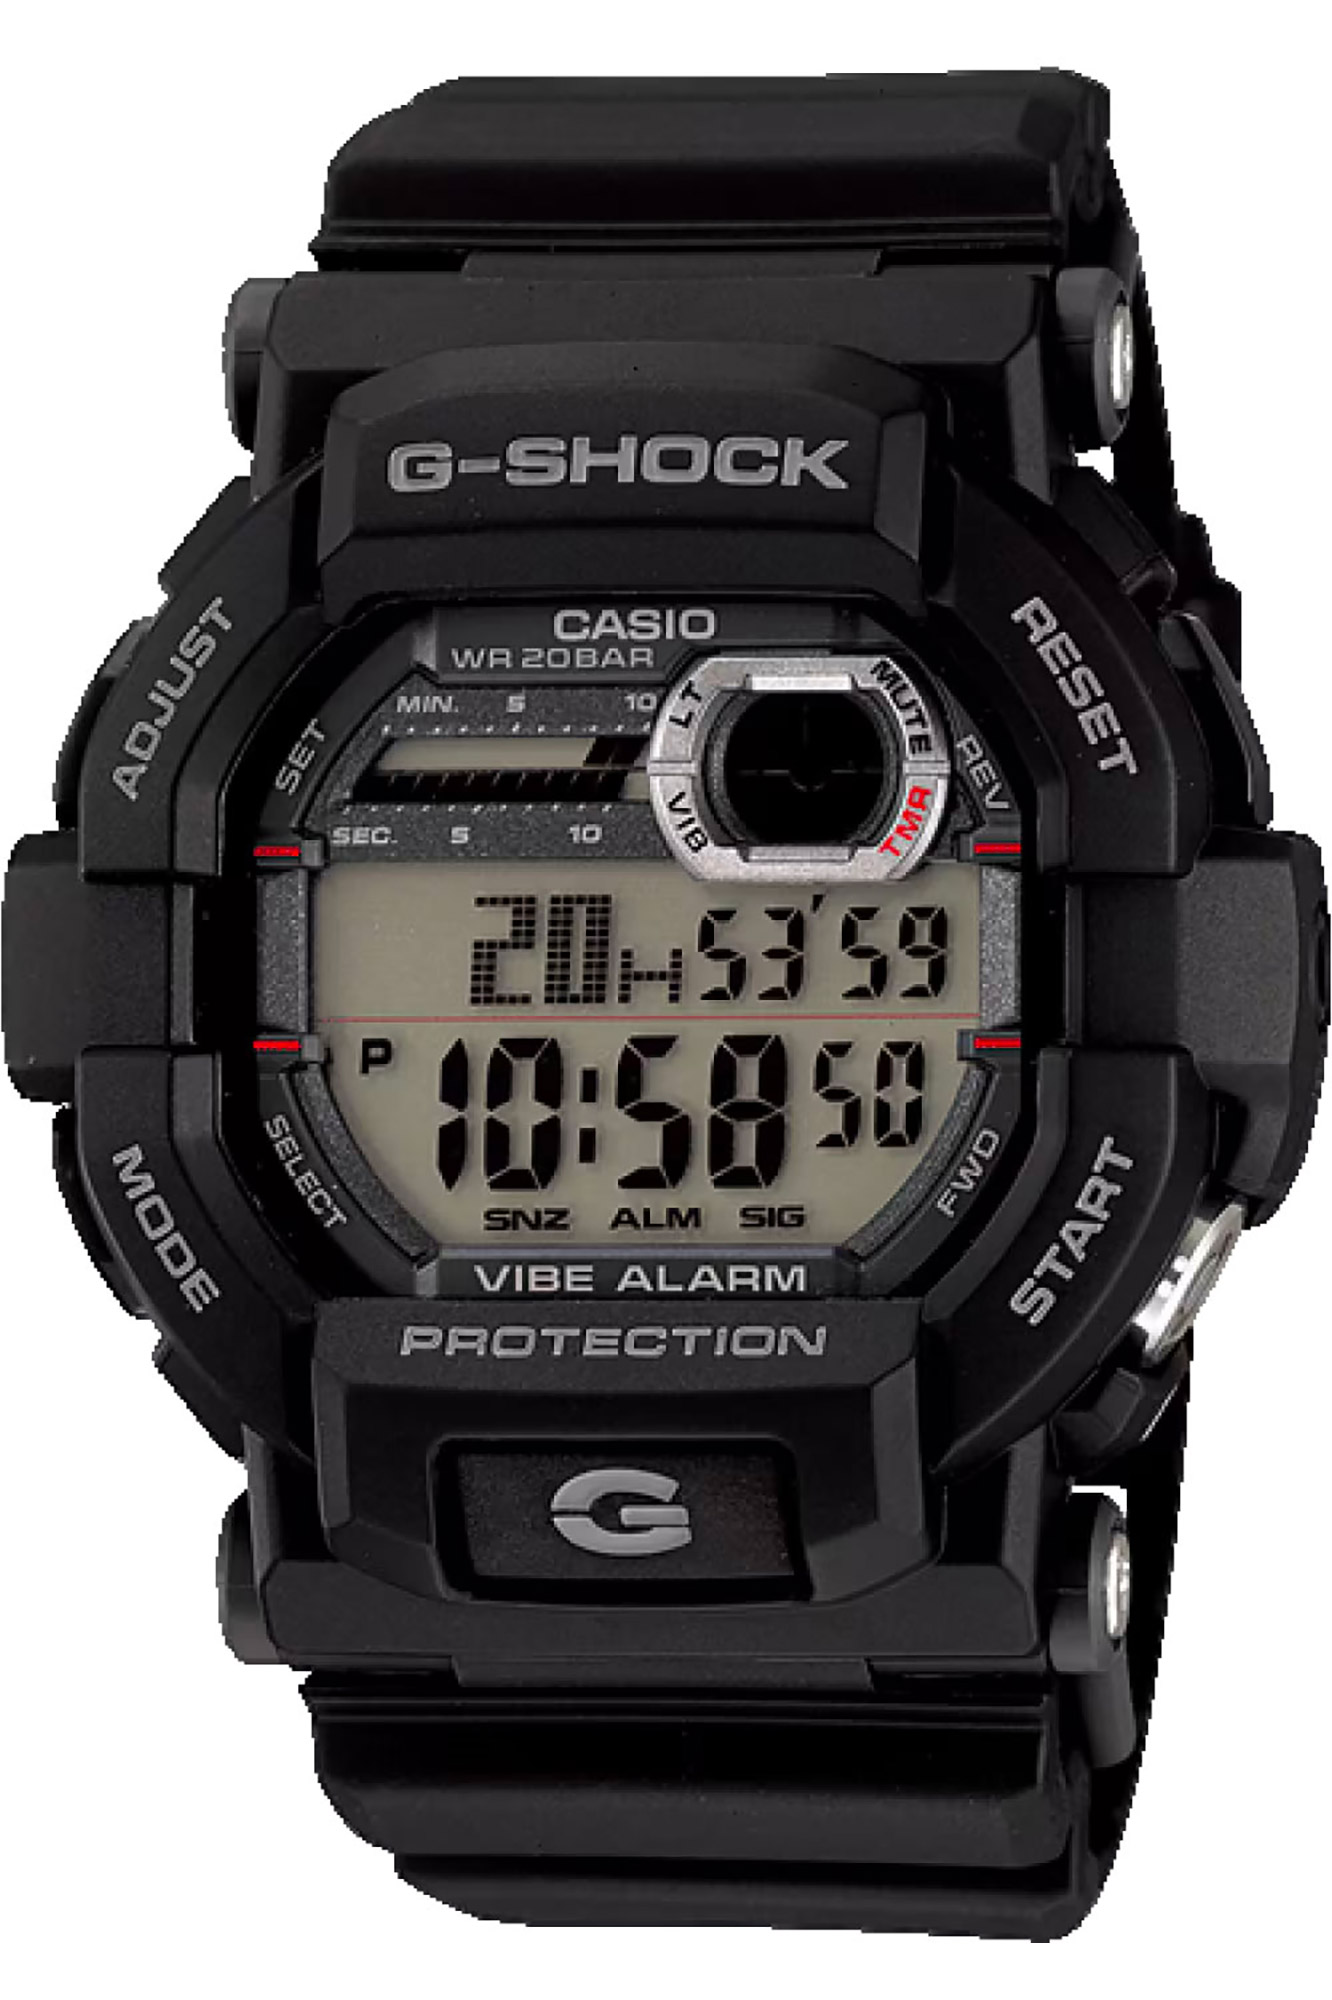 Watch CASIO G-Shock gd-350-1er